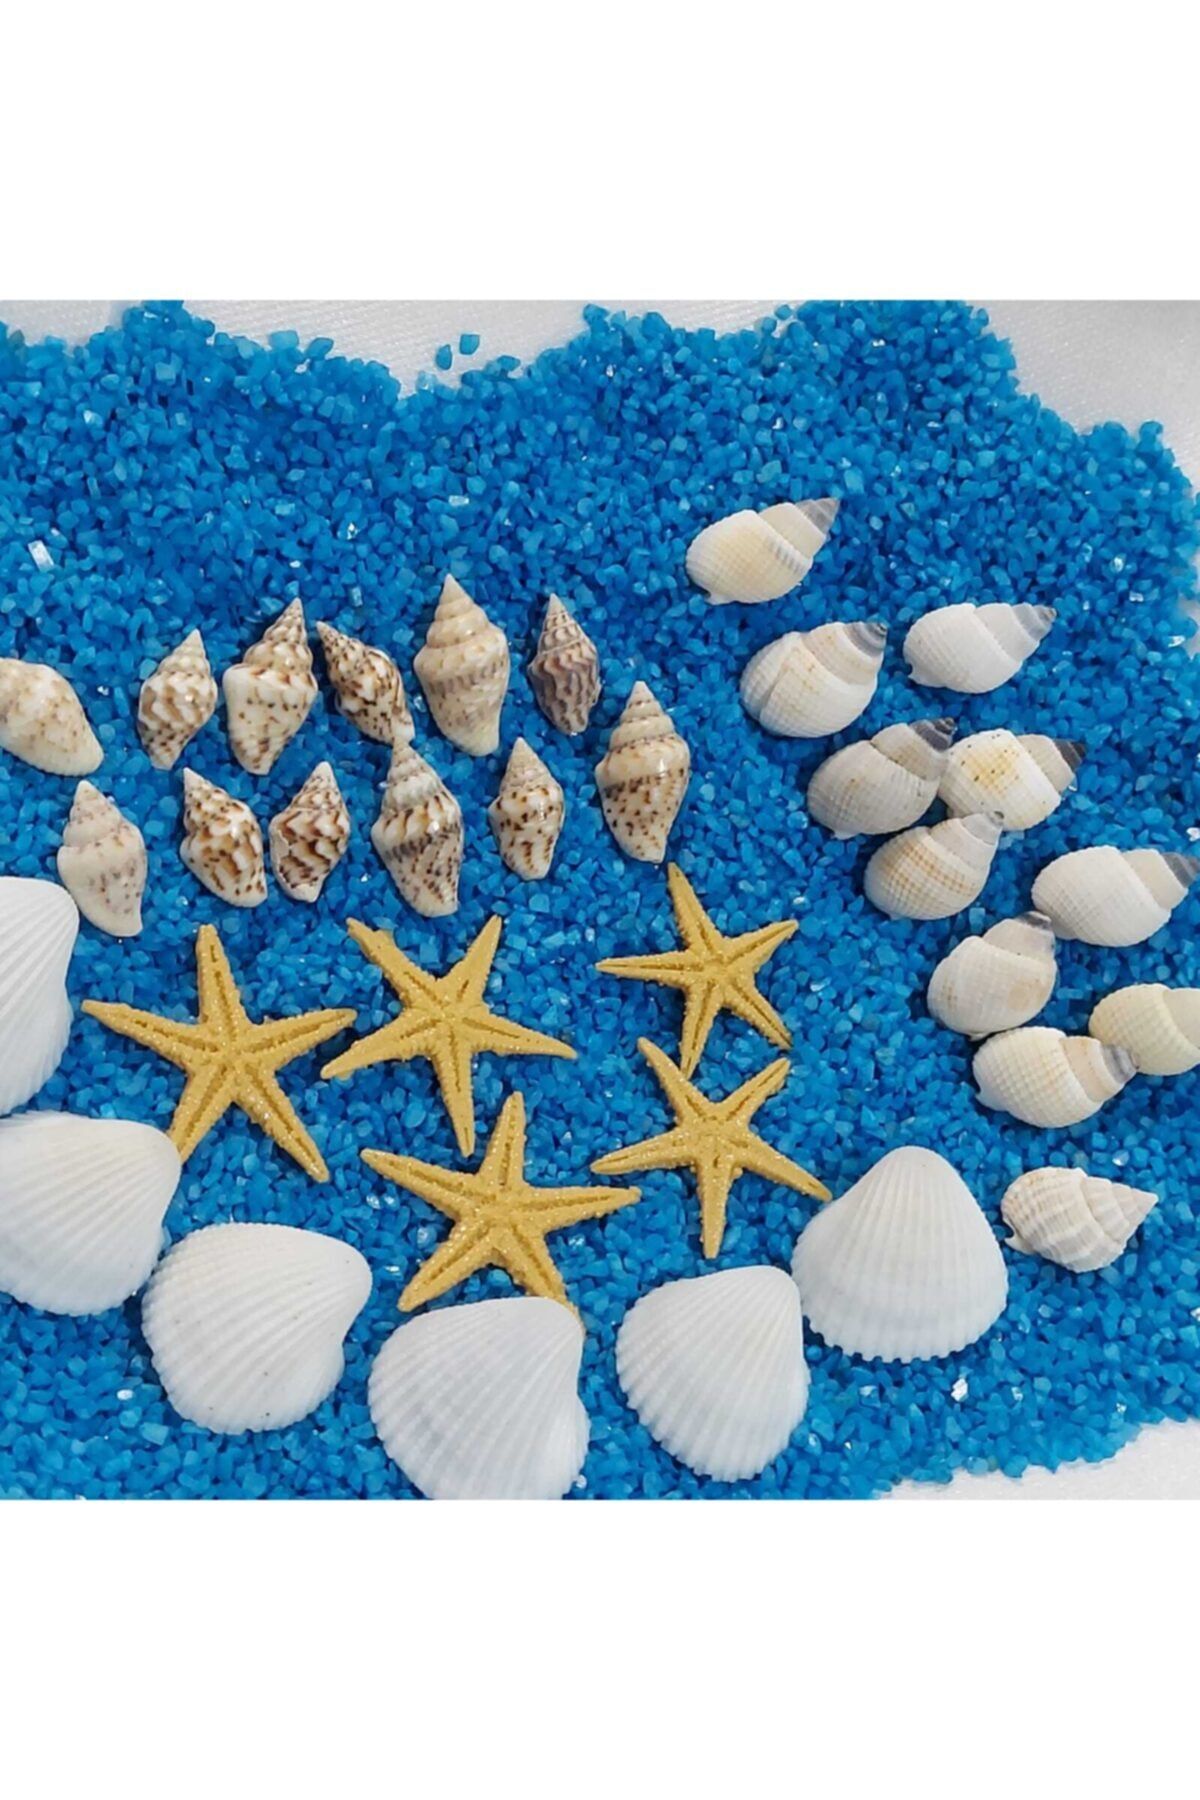 Aker Hediyelik Deniz Kabukları Silis Kabuk 07mm2,5cm Hesaplı Deniz Kabuğu 150gr + 150gr Teraryum Mavi Kum+yıldız